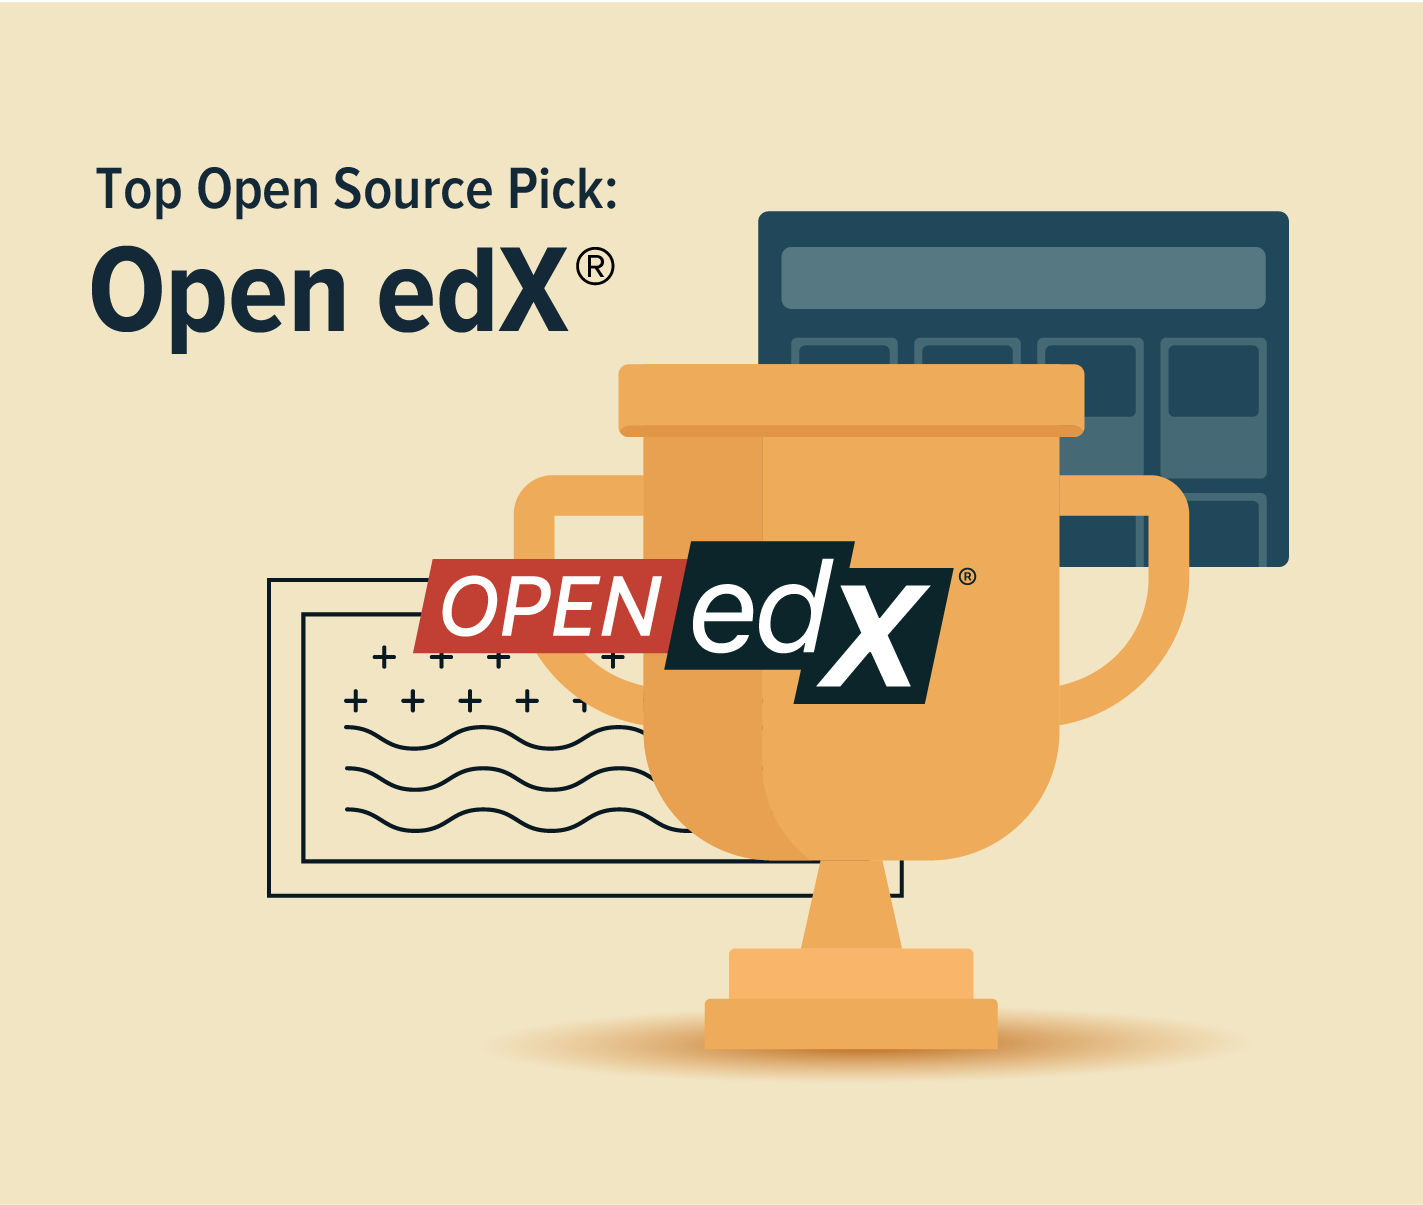 Top Open Source Pick: Open Edx